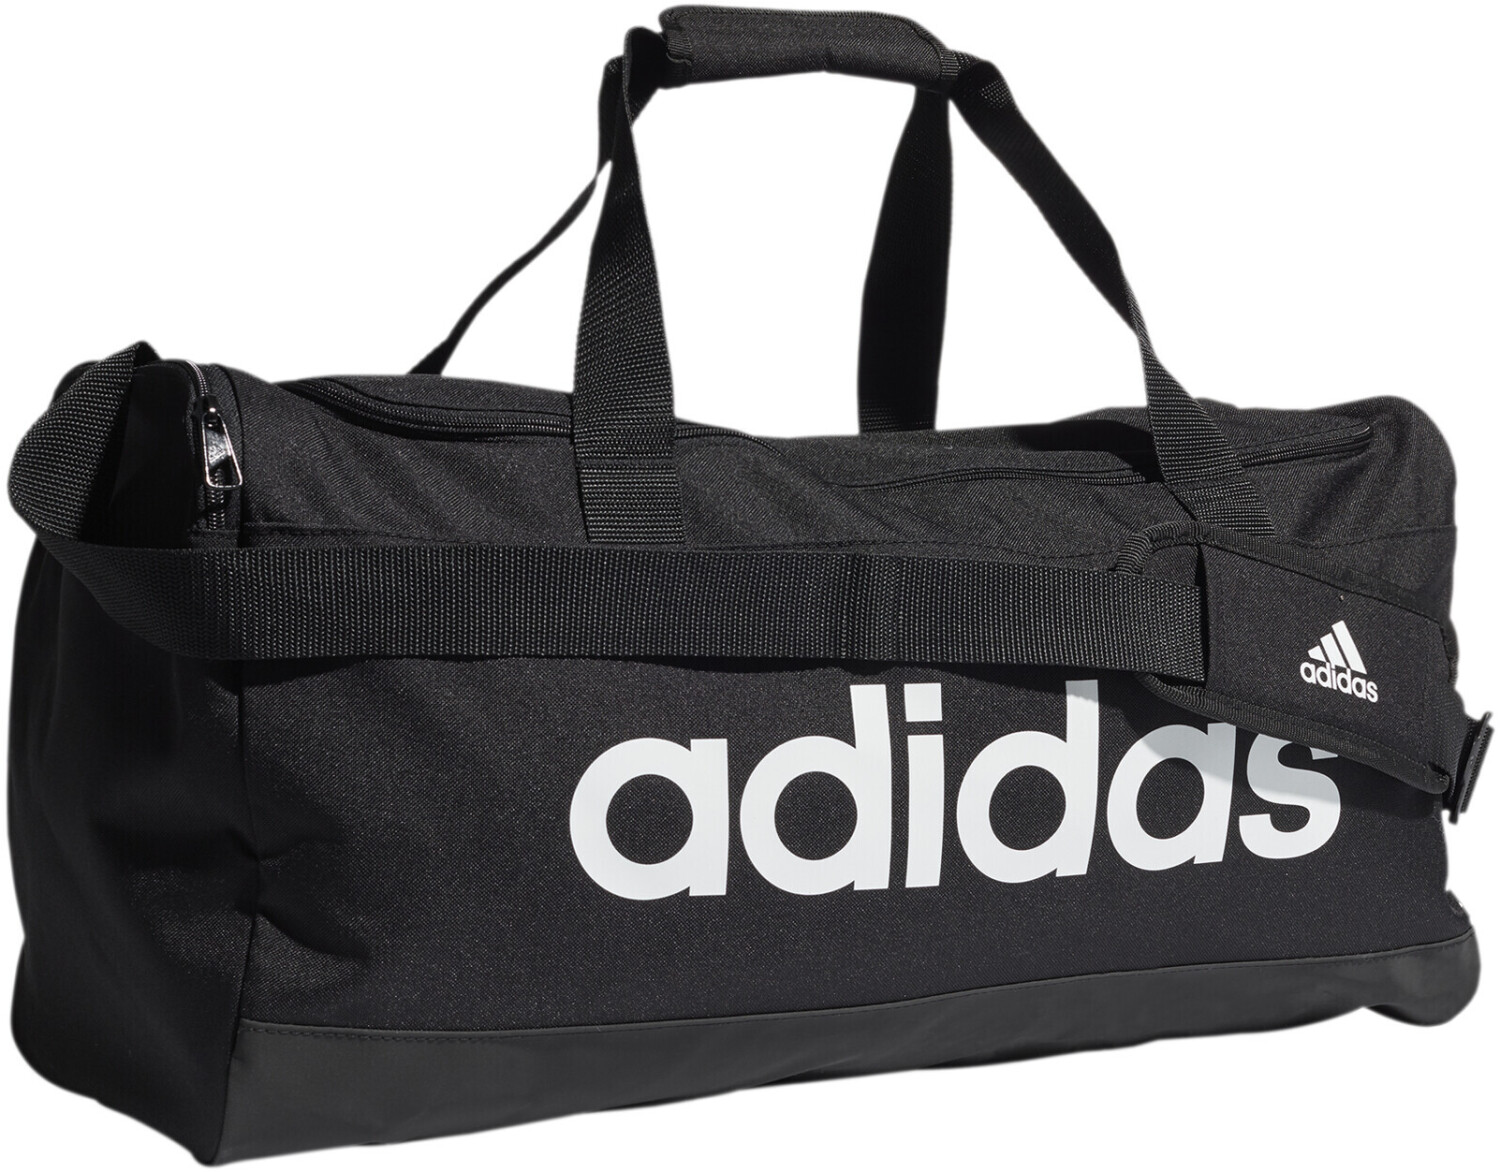 Adidas Sports Bags for Men  Mercari